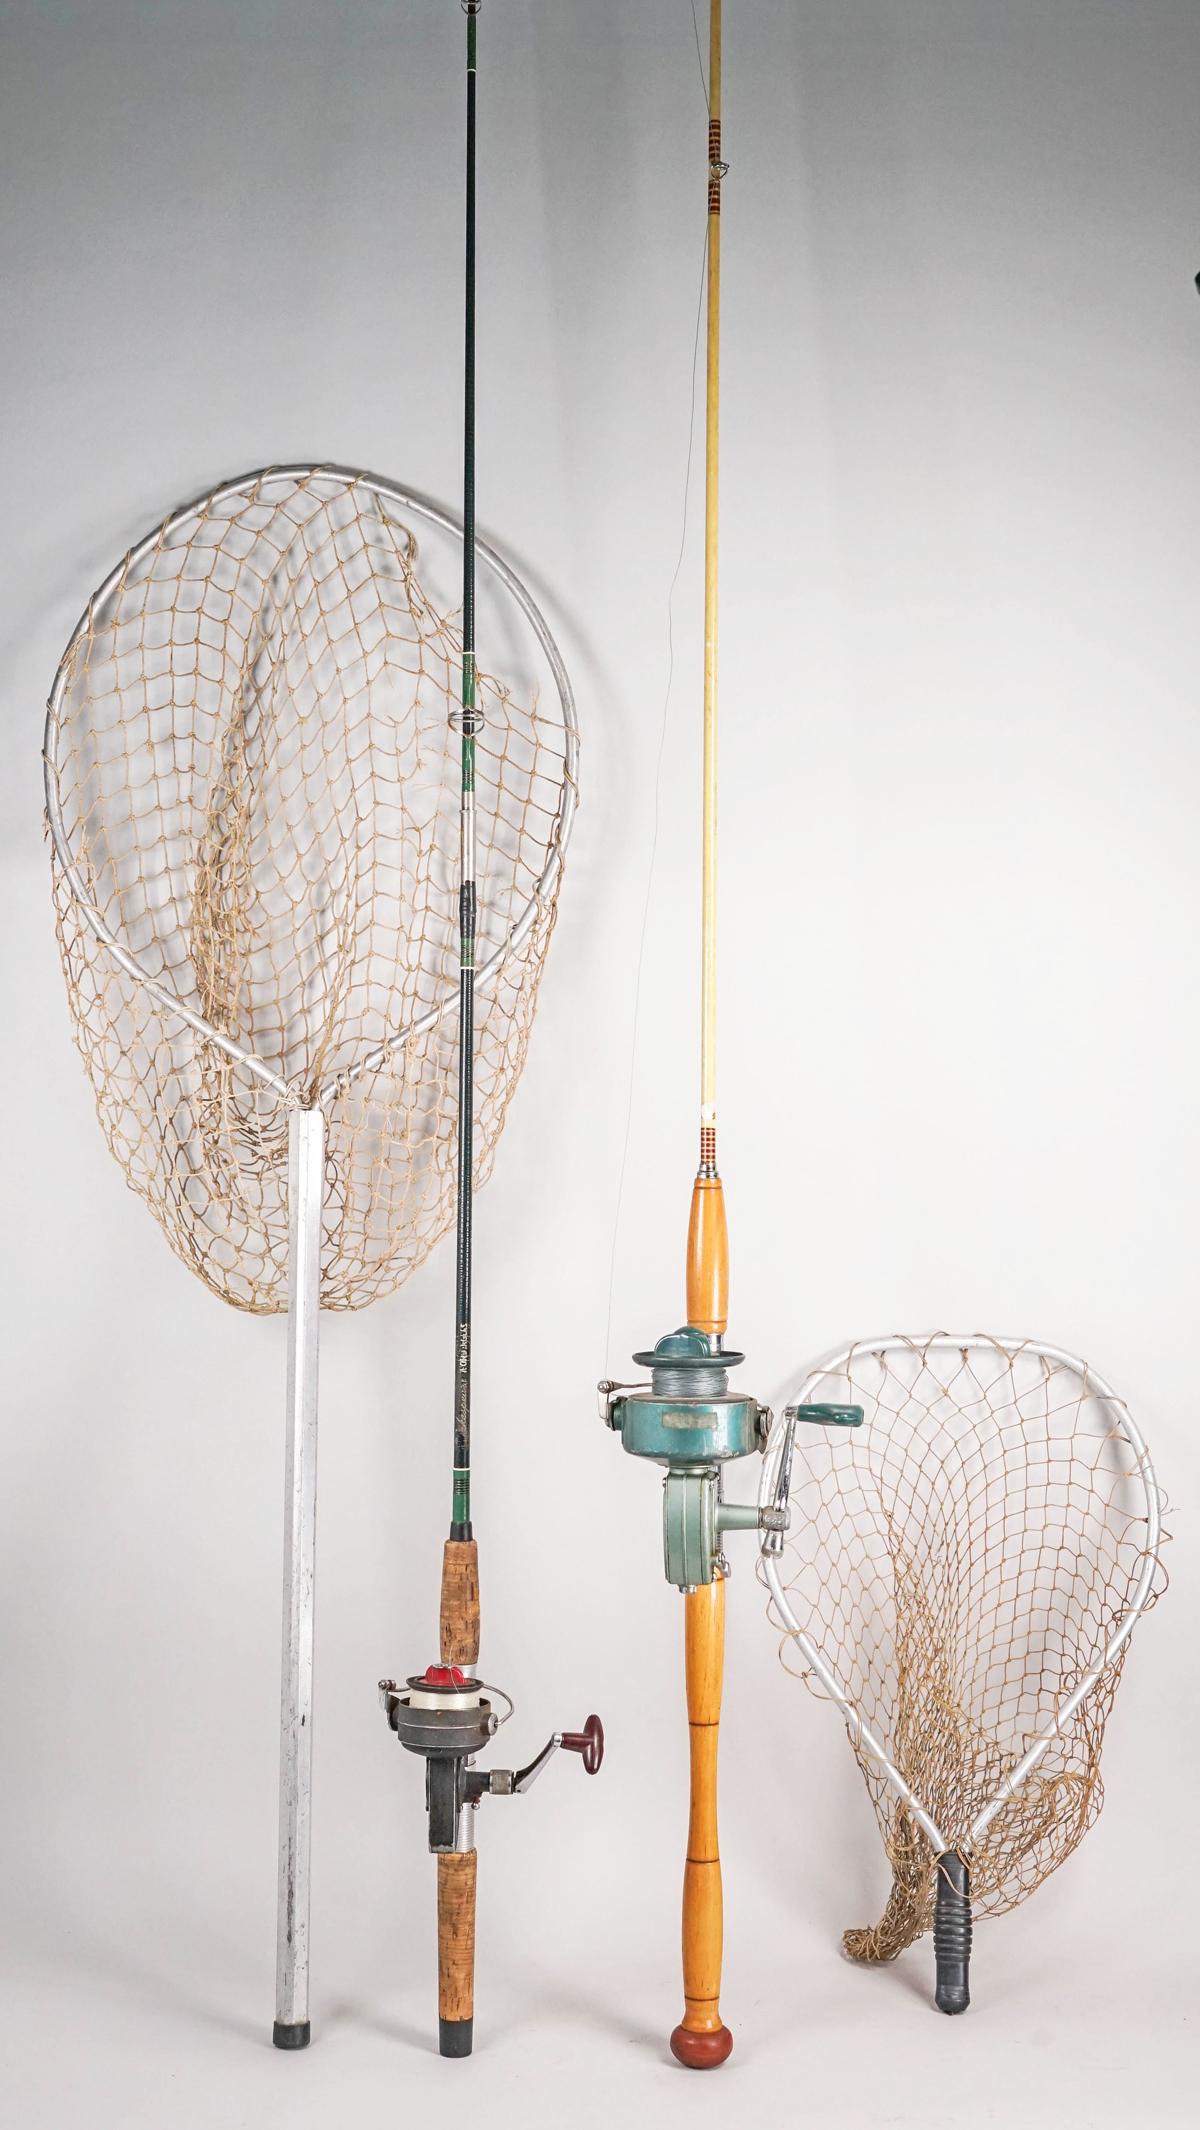 Fishing Rods, Reels & Nets